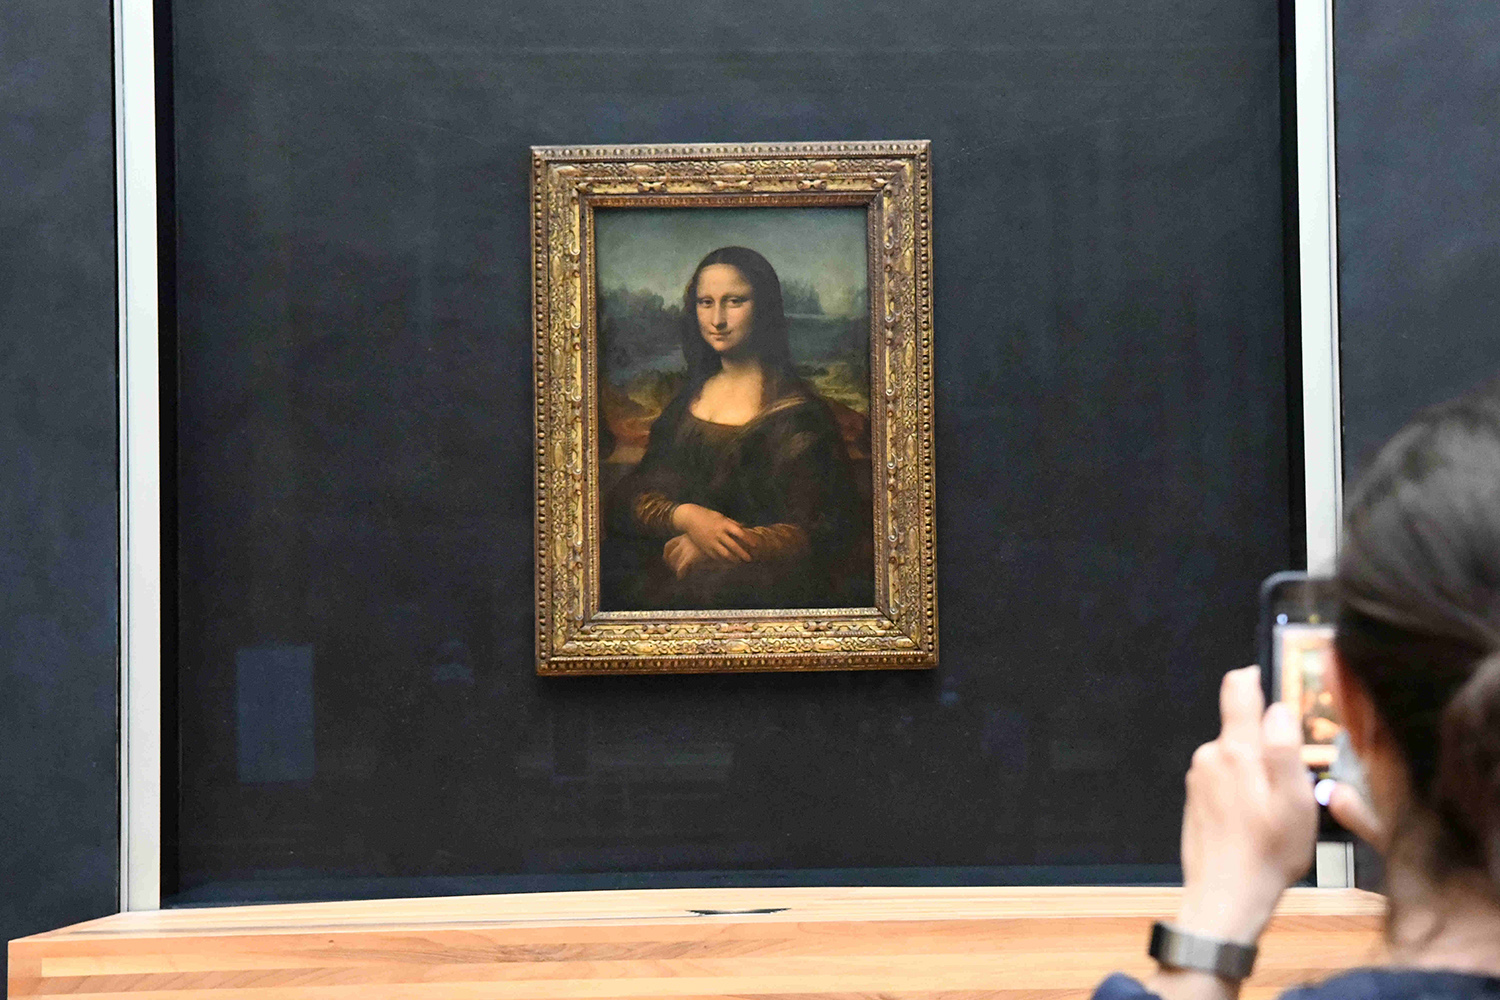 Fényderült a Mona Lisa egyik titkára, ötszáz év után